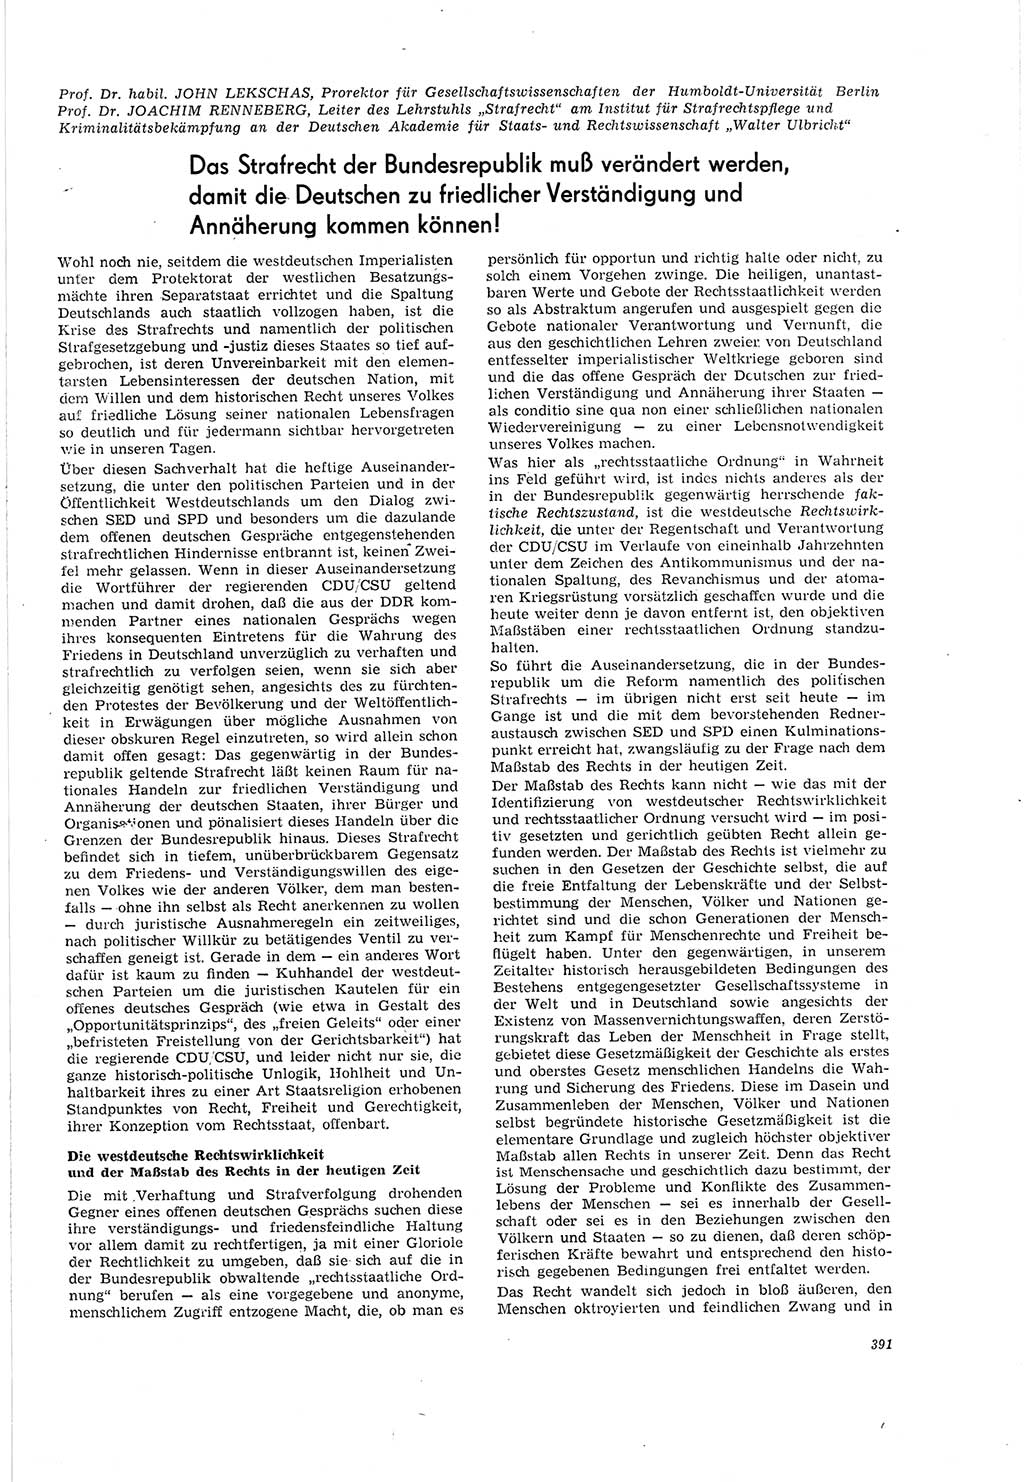 Neue Justiz (NJ), Zeitschrift für Recht und Rechtswissenschaft [Deutsche Demokratische Republik (DDR)], 20. Jahrgang 1966, Seite 391 (NJ DDR 1966, S. 391)